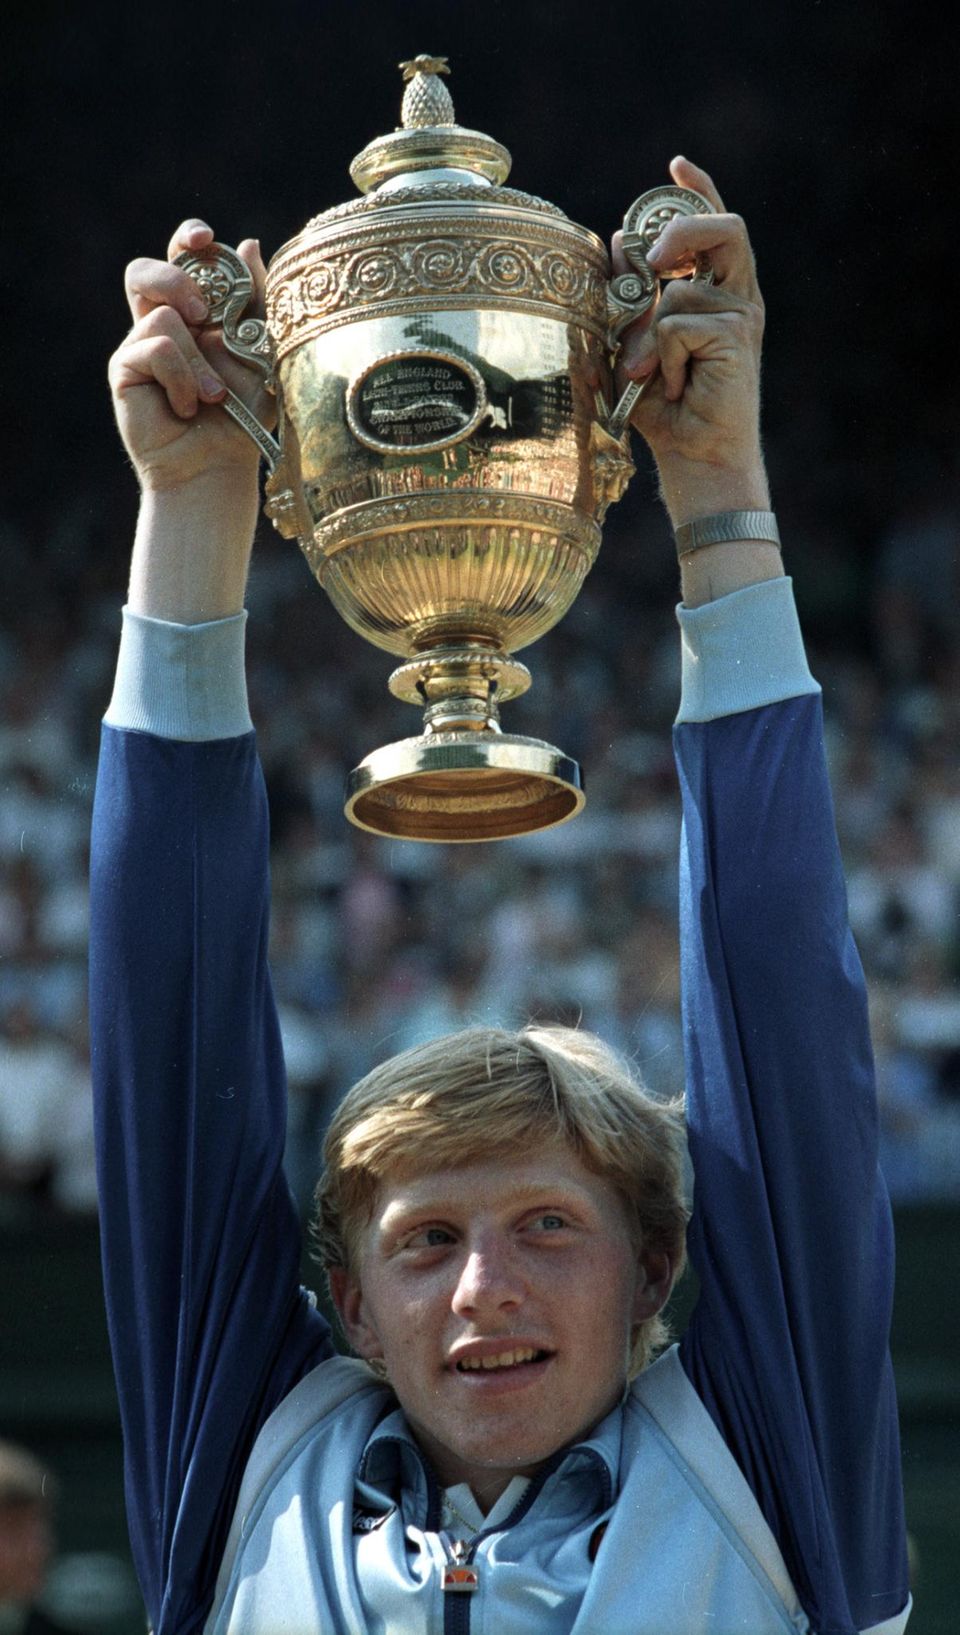 Wenn Boris Becker auf dem Court stand, saß Deutschland vor dem Fernseher: 1985 gewann der damals 17-jährige Leimener als jüngster Spieler das Turnier von Wimbledon. Noch heute versucht er mit allen Mitteln, von diesem Ruhm zu zehren.